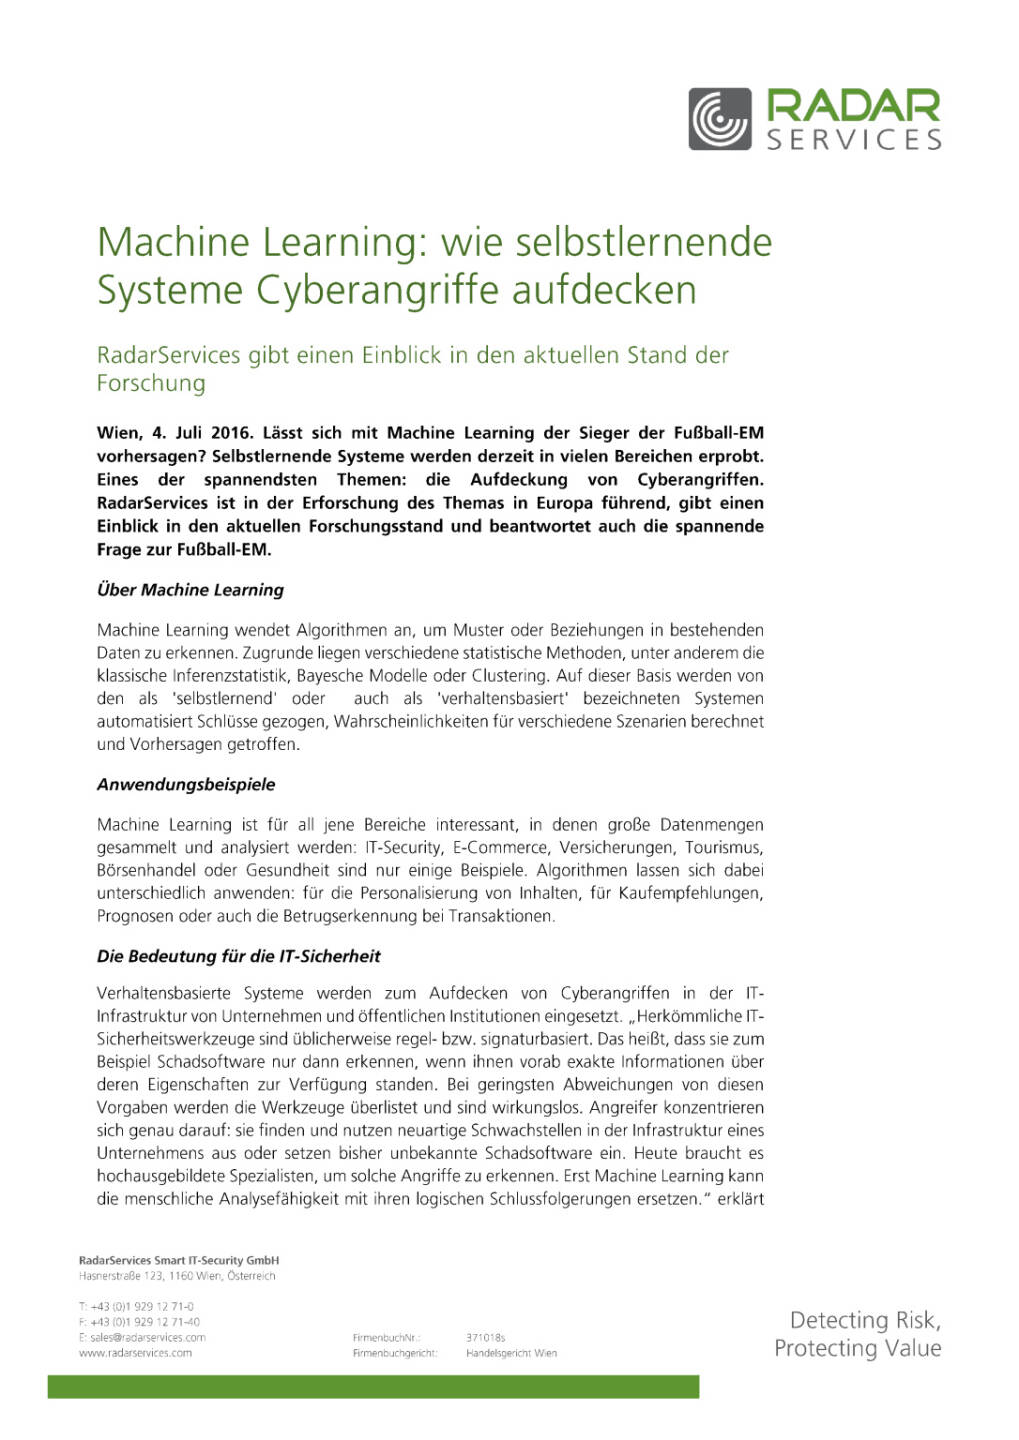 RadarServices: Machine Learning - wie selbstlernende Systeme Cyberangriffe aufdecken, Seite 1/3, komplettes Dokument unter http://boerse-social.com/static/uploads/file_1324_radarservices_machine_learning_-_wie_selbstlernende_systeme_cyberangriffe_aufdecken.pdf